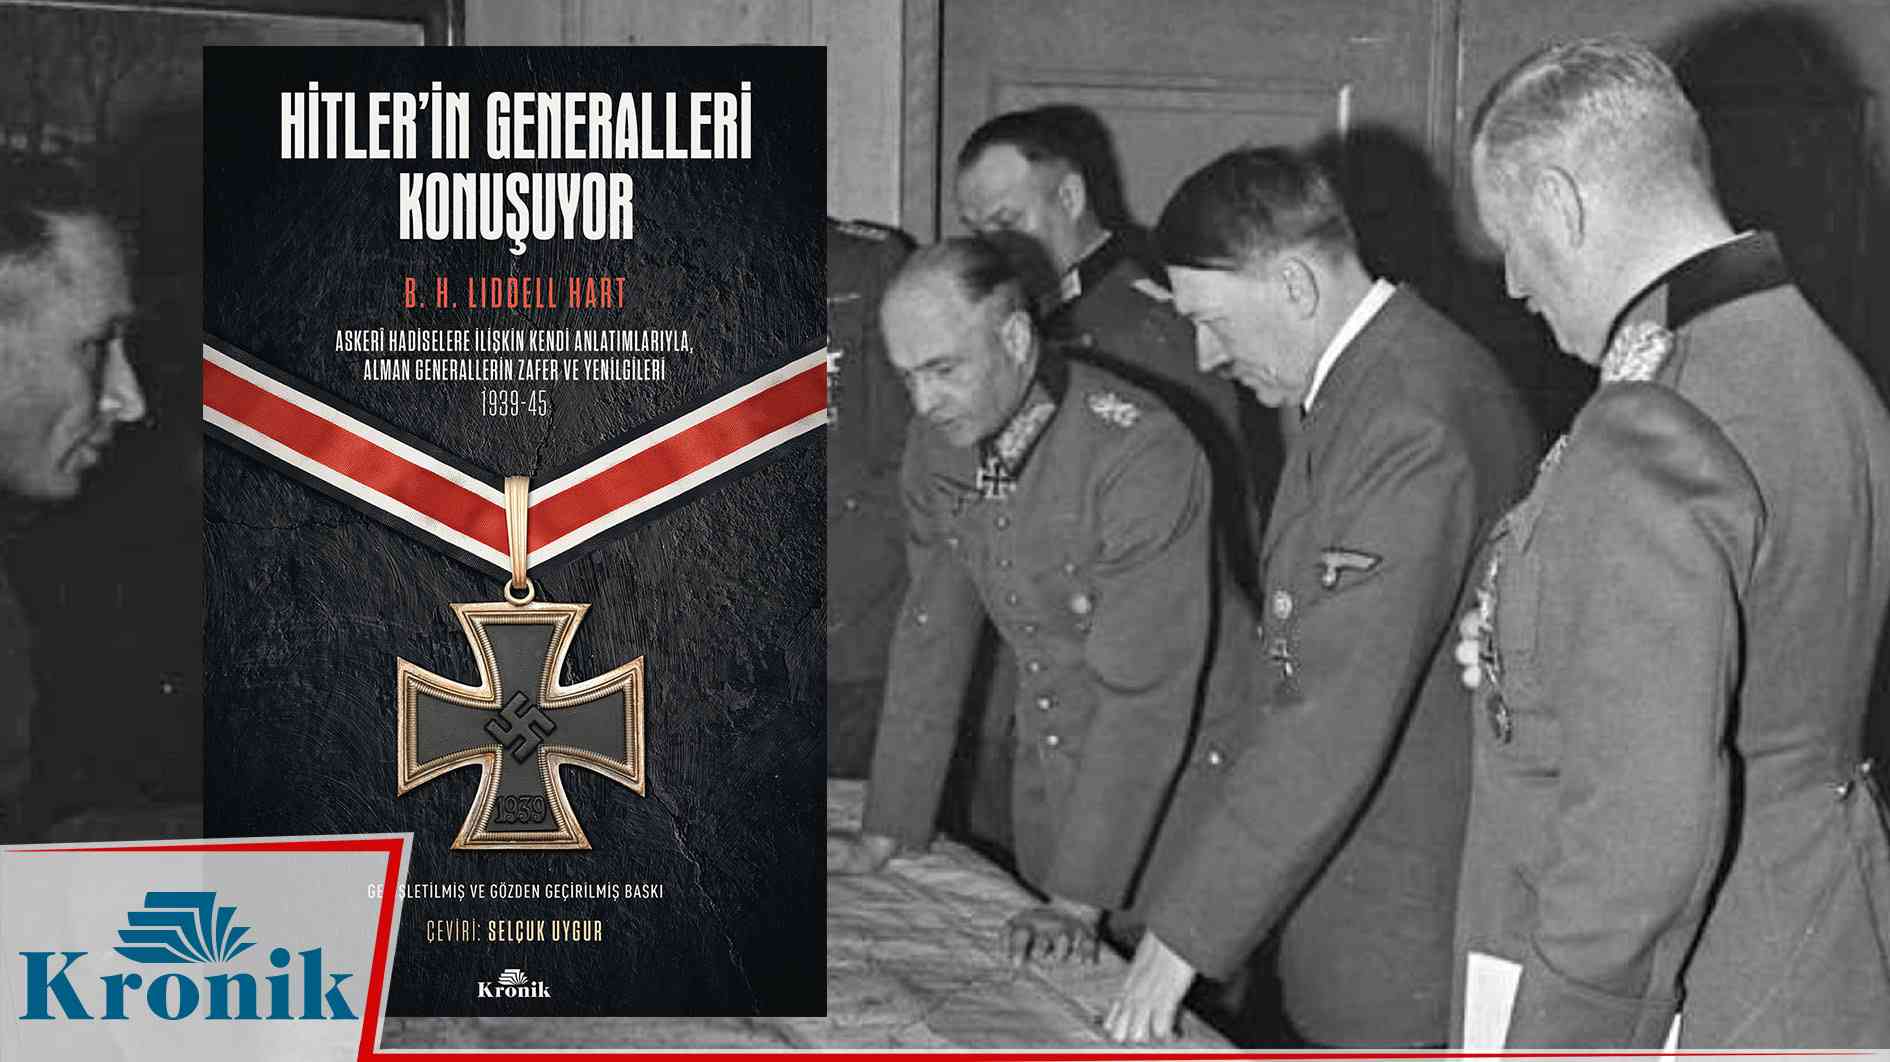 Kitap: "Hitler’in Generalleri Konuşuyor"